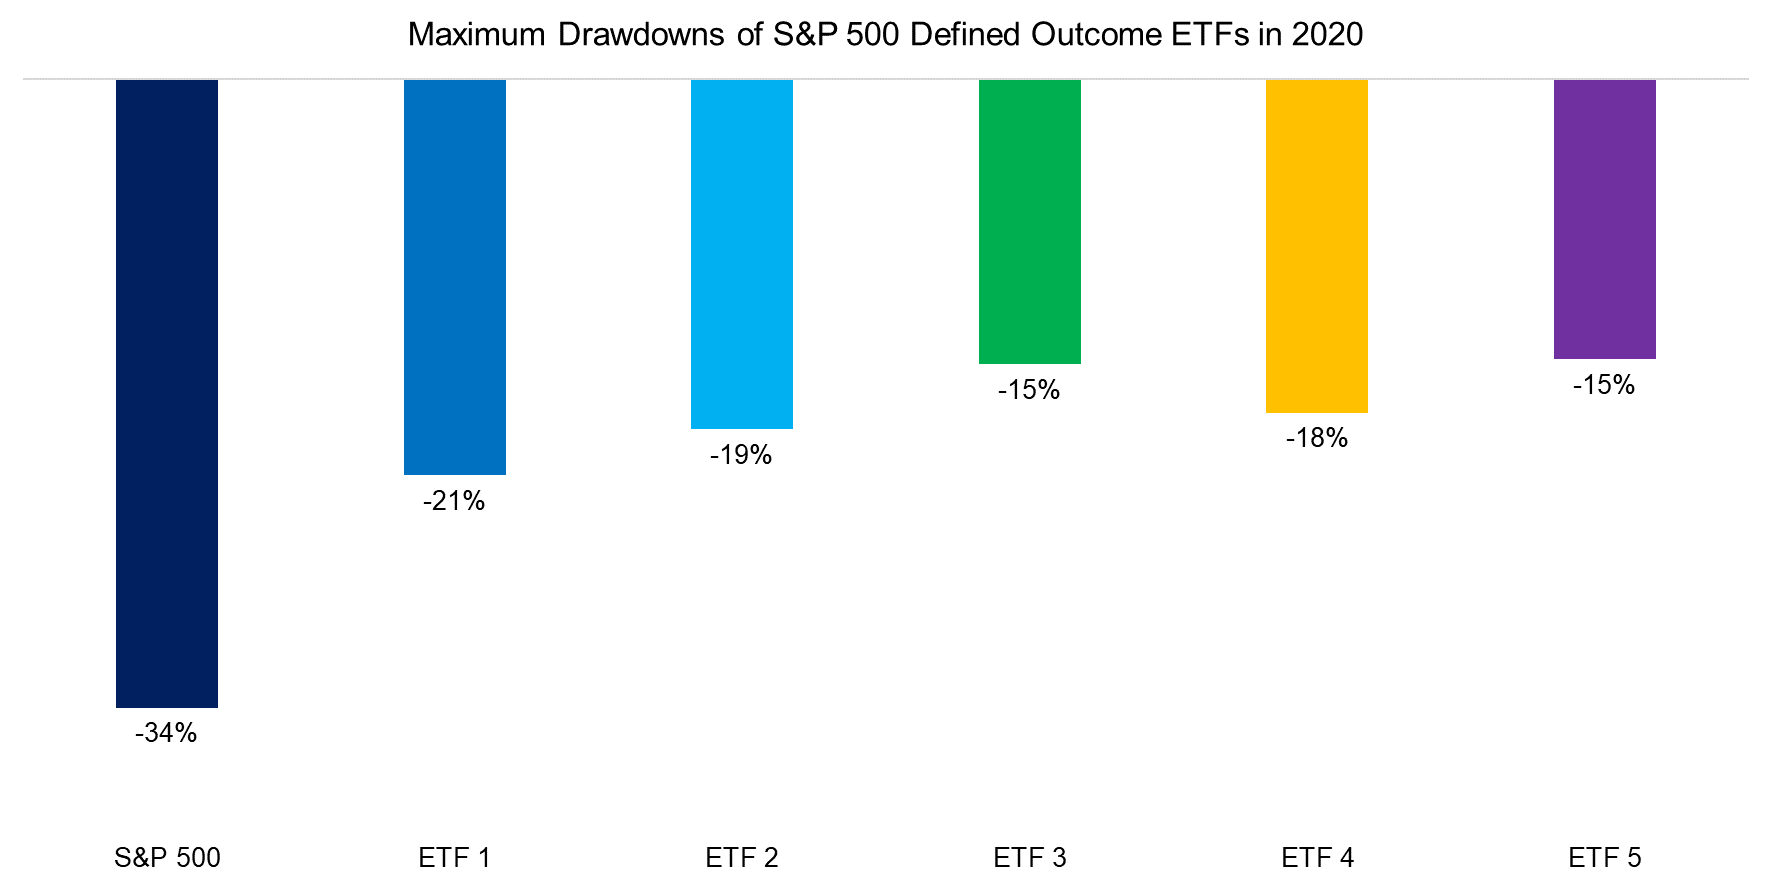 Maximum Drawdowns of S&P 500 Defined Outcome ETFs in 2020